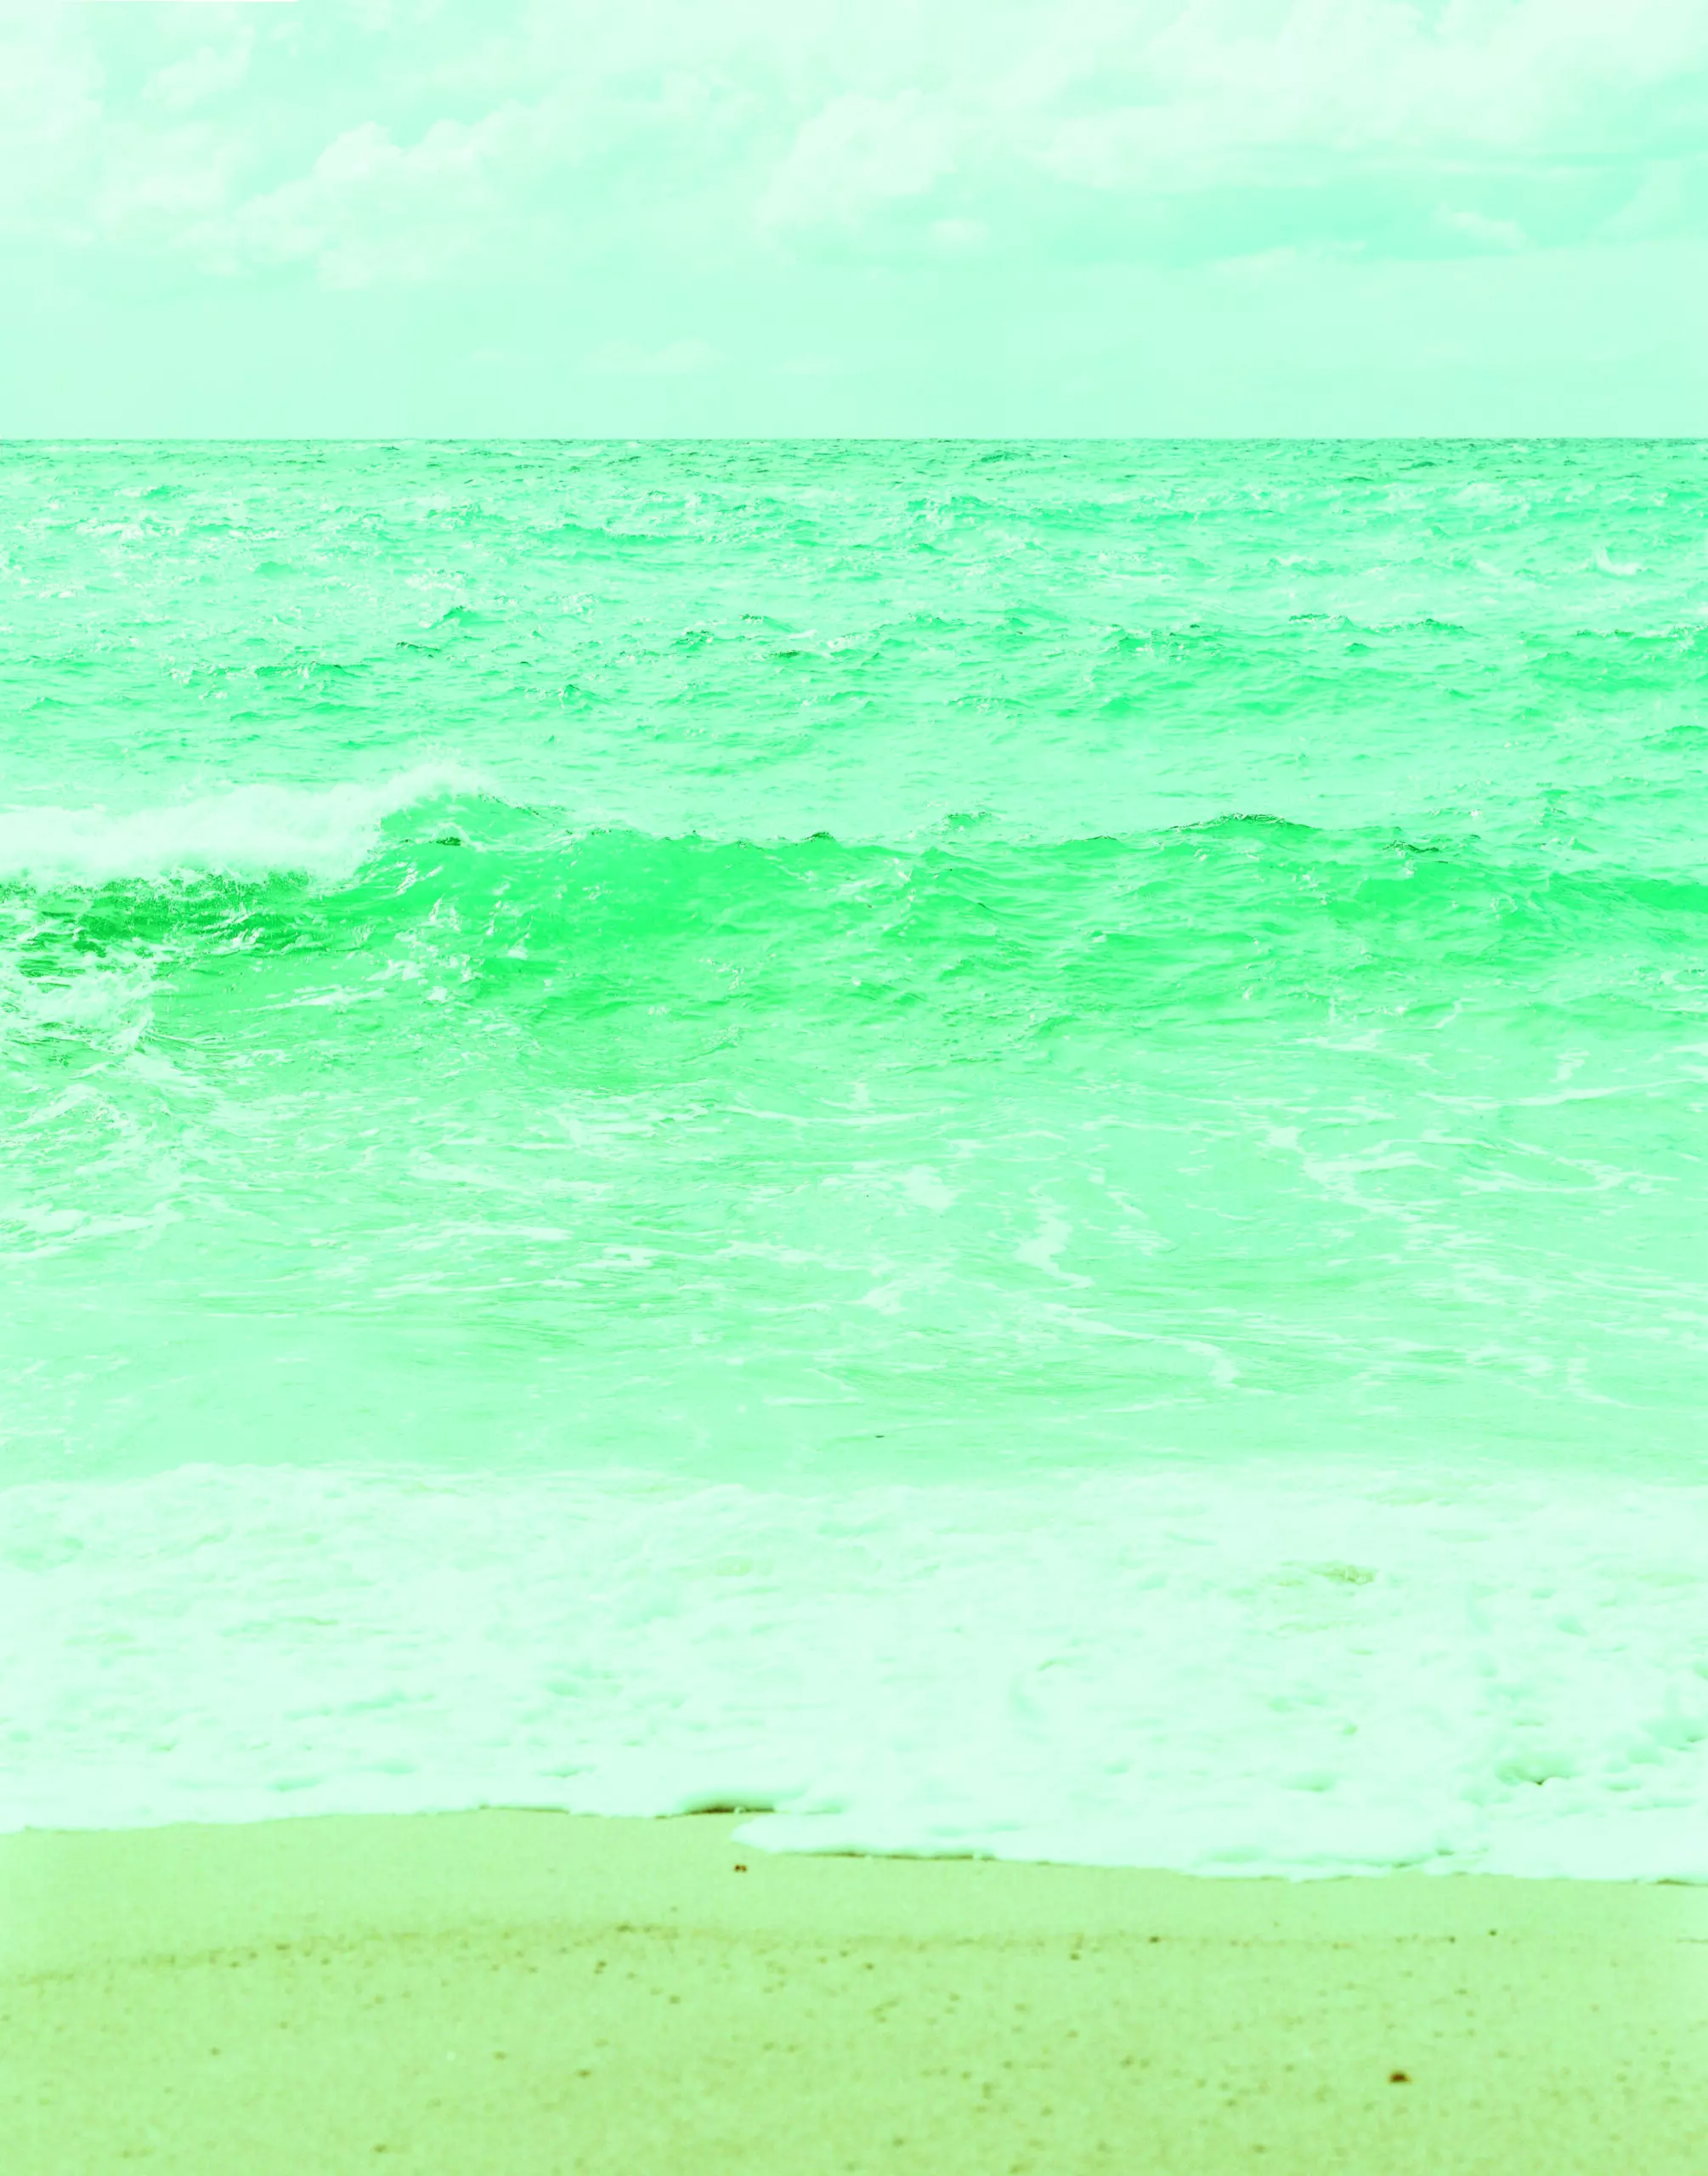 Wandbild (5507) Dancing waves by Giovanni Simeone/HUBER IMAGES präsentiert: Wasser,Natur,Landschaften,Sommer,Strände,Gewässer,Meere